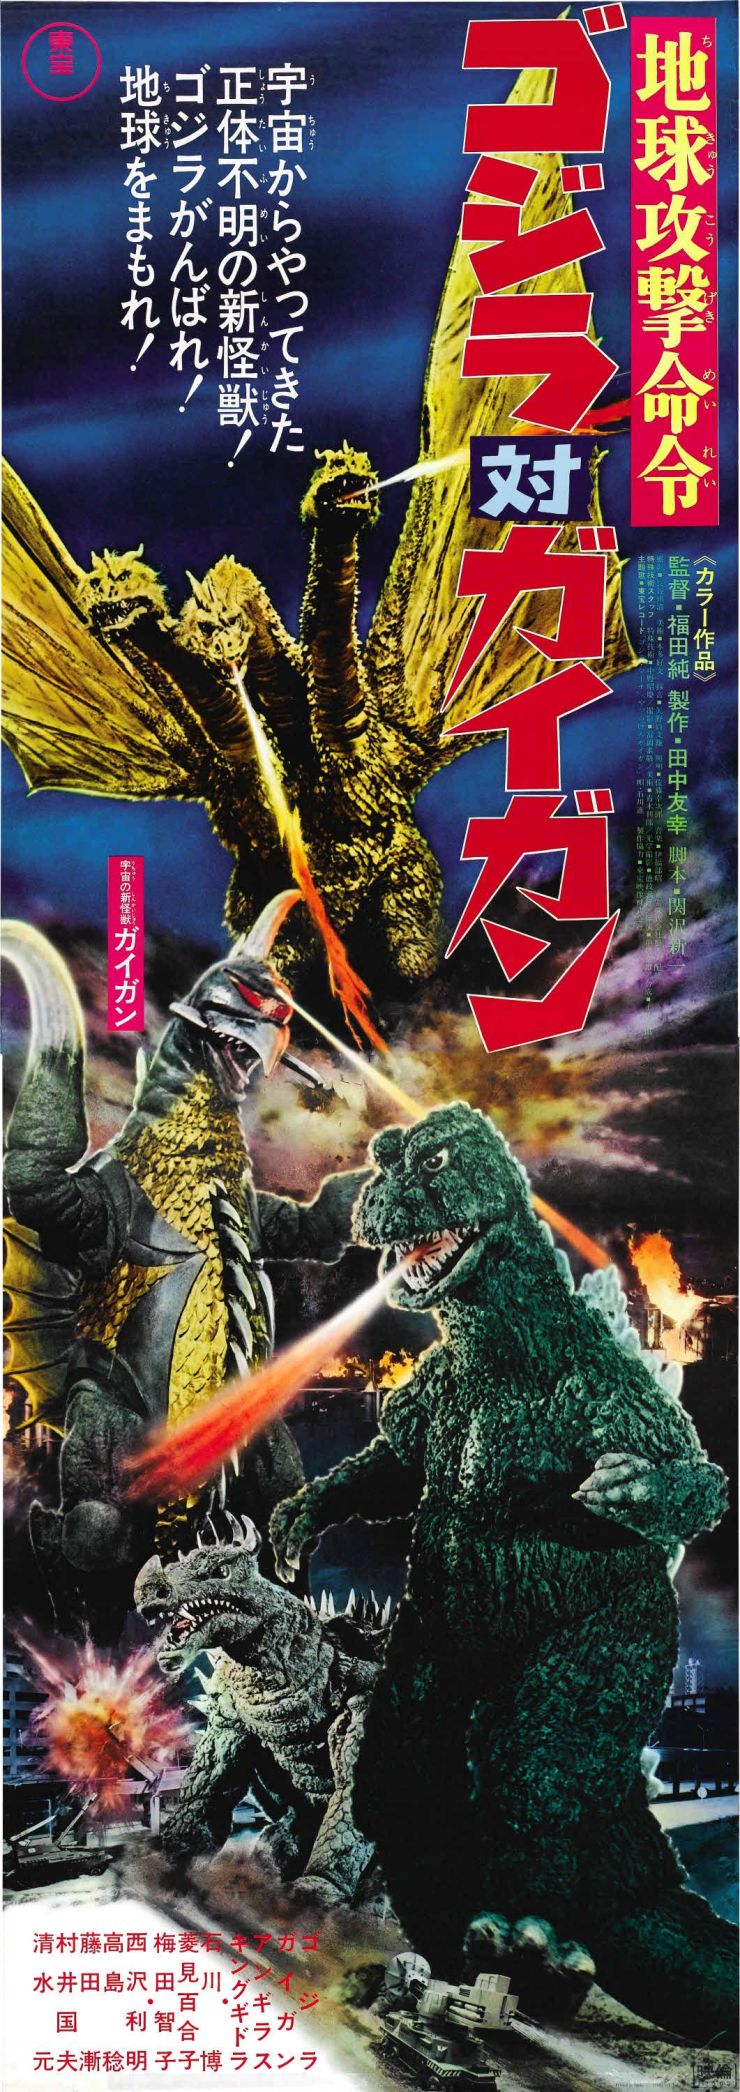 Godzilla Vs Gigan